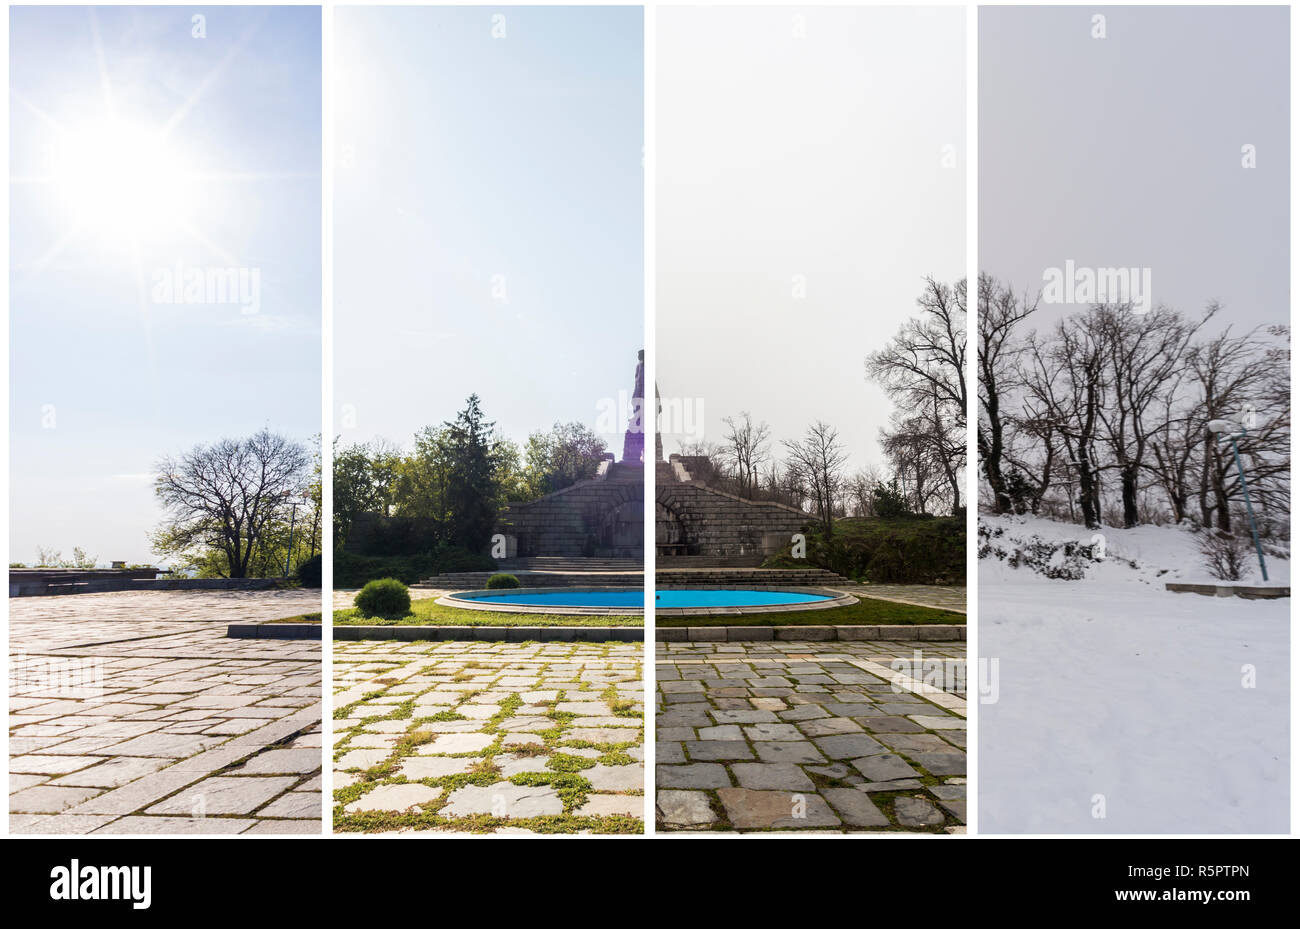 Vier Jahreszeiten Konzept. Die Wirkung der 4 Jahreszeiten auf die städtische Umwelt. Vier Bilder von einem Ort, während eines Jahres erfasst und nahtlos Blended Stockfoto